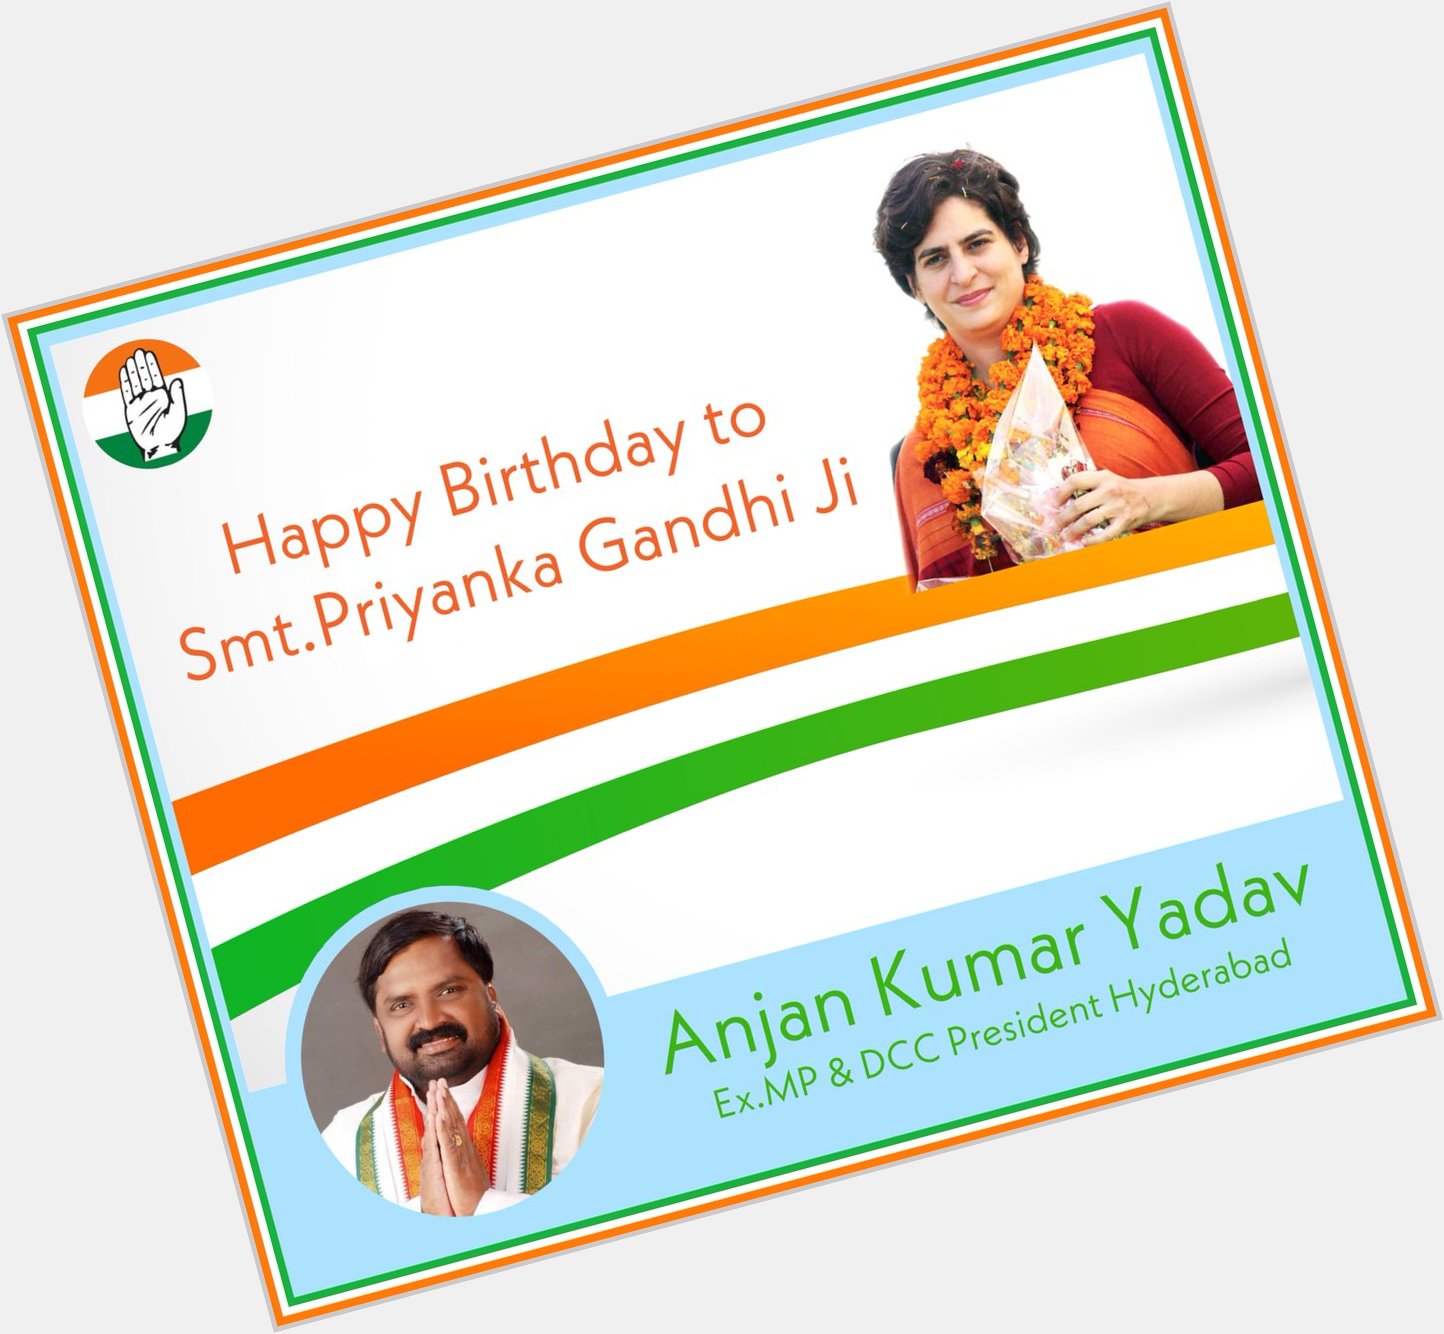 Happy Birthday to Smt.Priyanka Gandhi Ji    